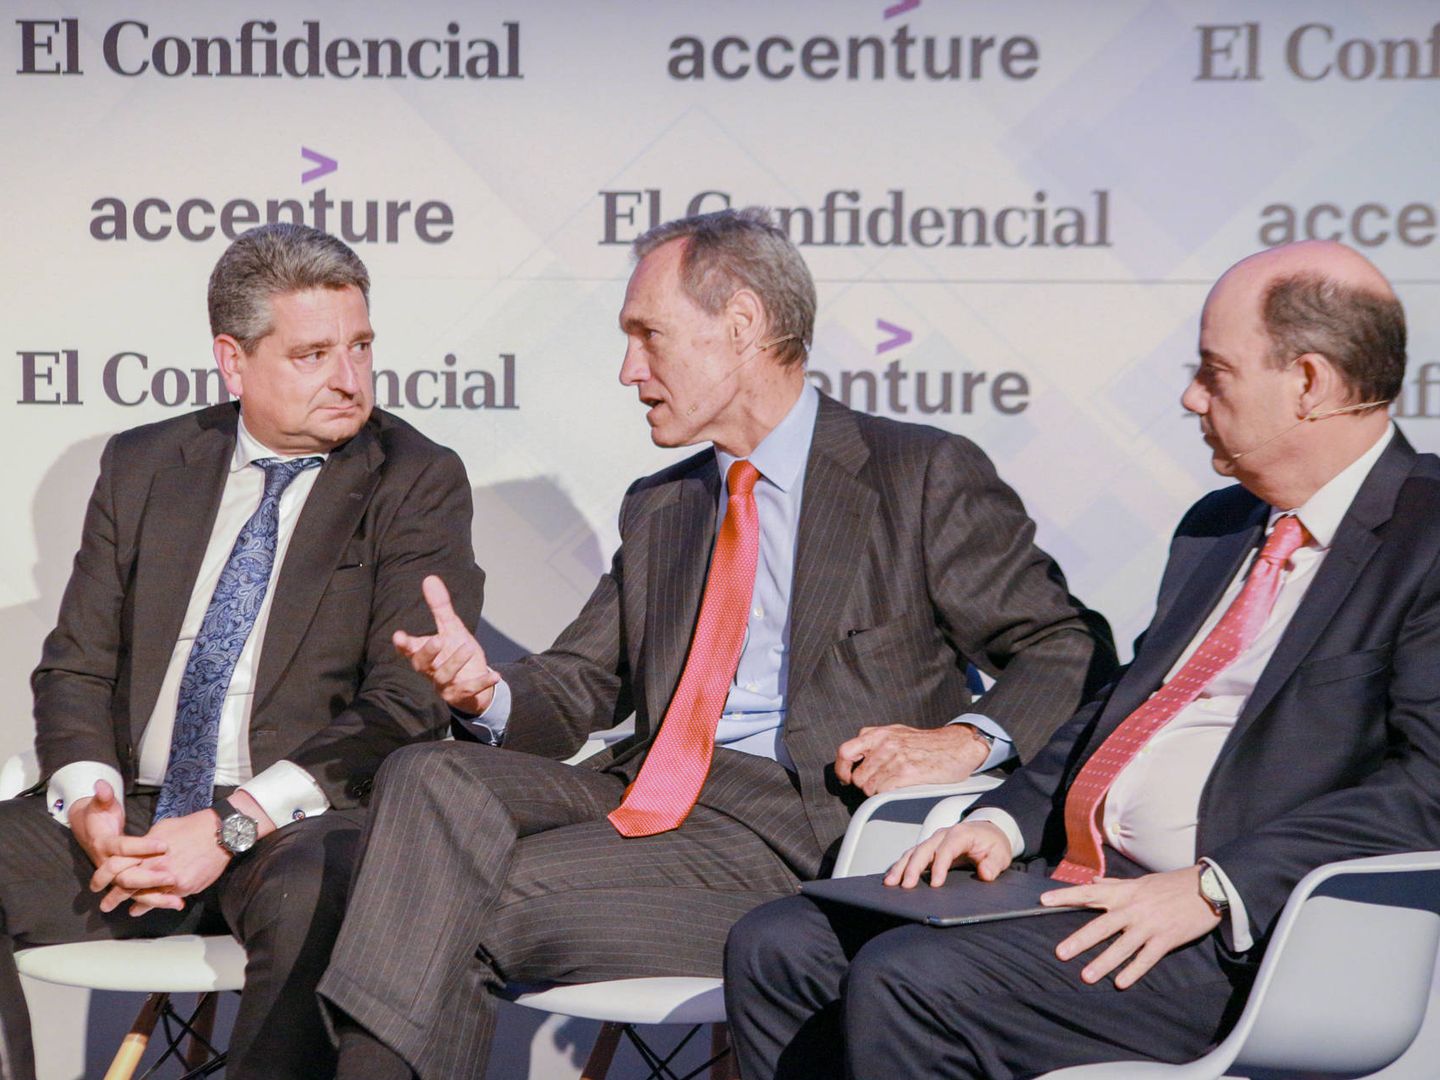 De izquierda a derecha: Miguel Ángel López (Siemens), Silvio González (Atresmedia) y José Manuel Inchausti (Mapfre).